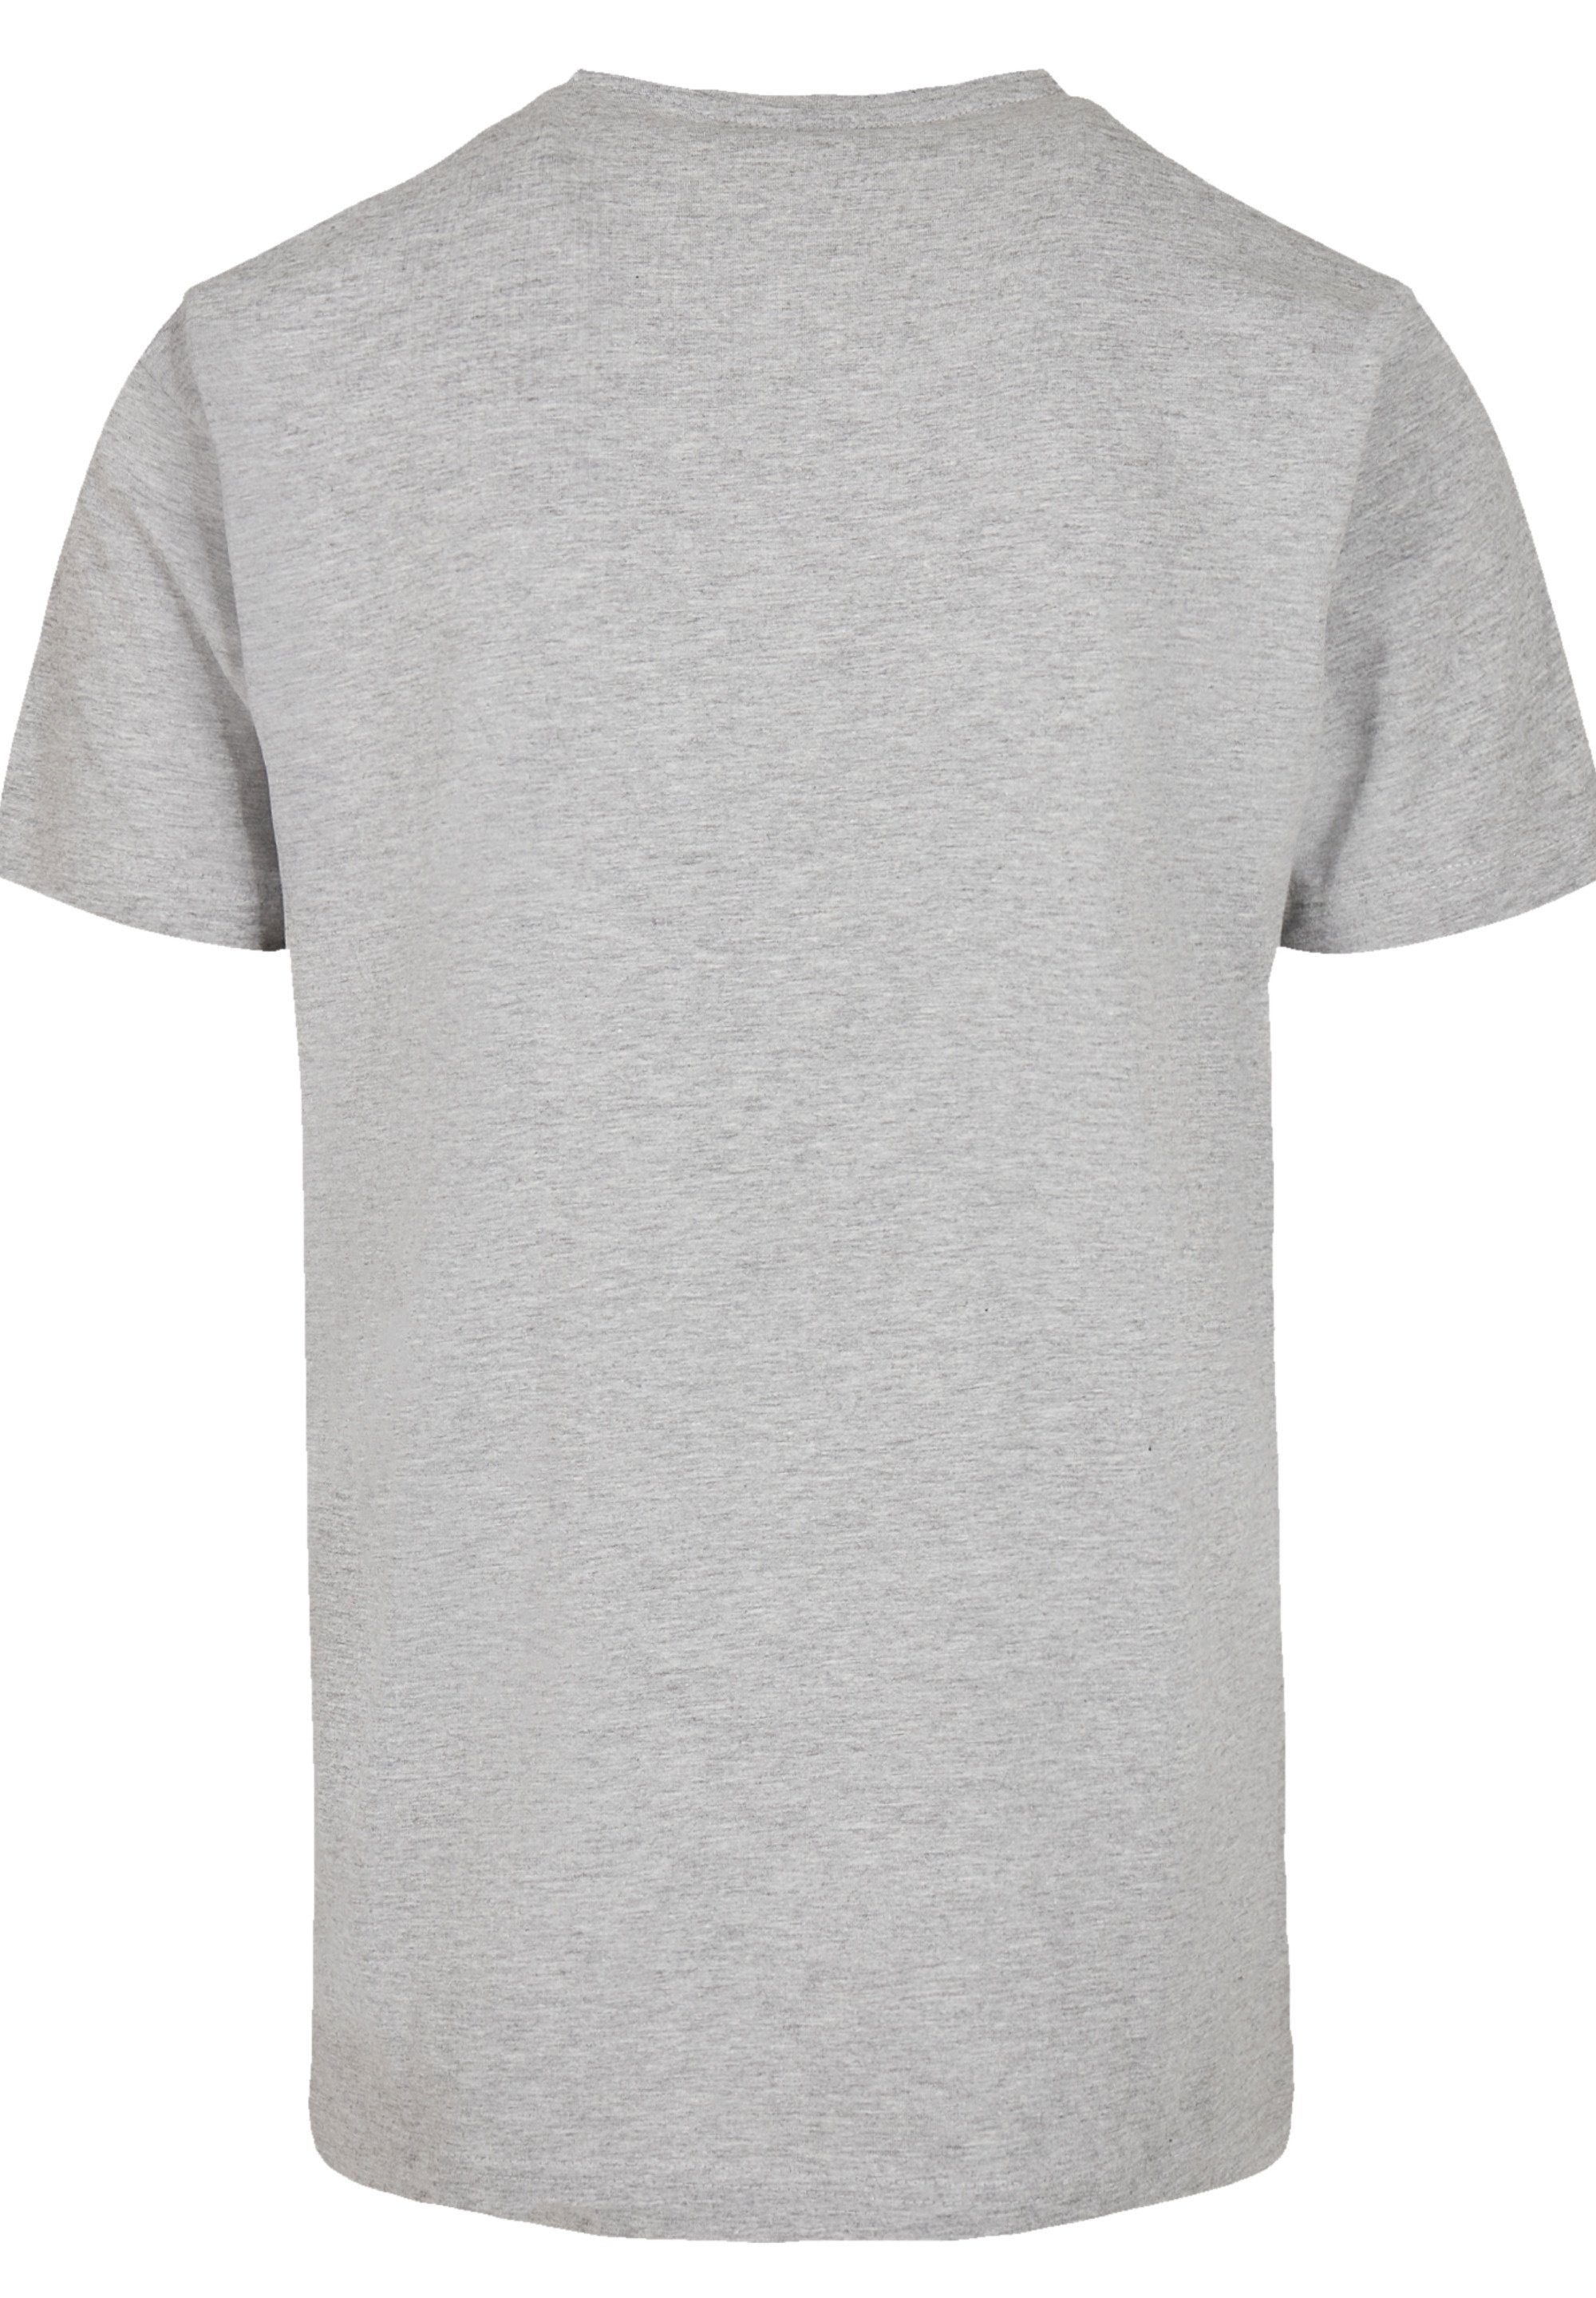 F4NT4STIC T-Shirt Ahoi Anker Knut Crop & grey Hamburg Jan Print heather